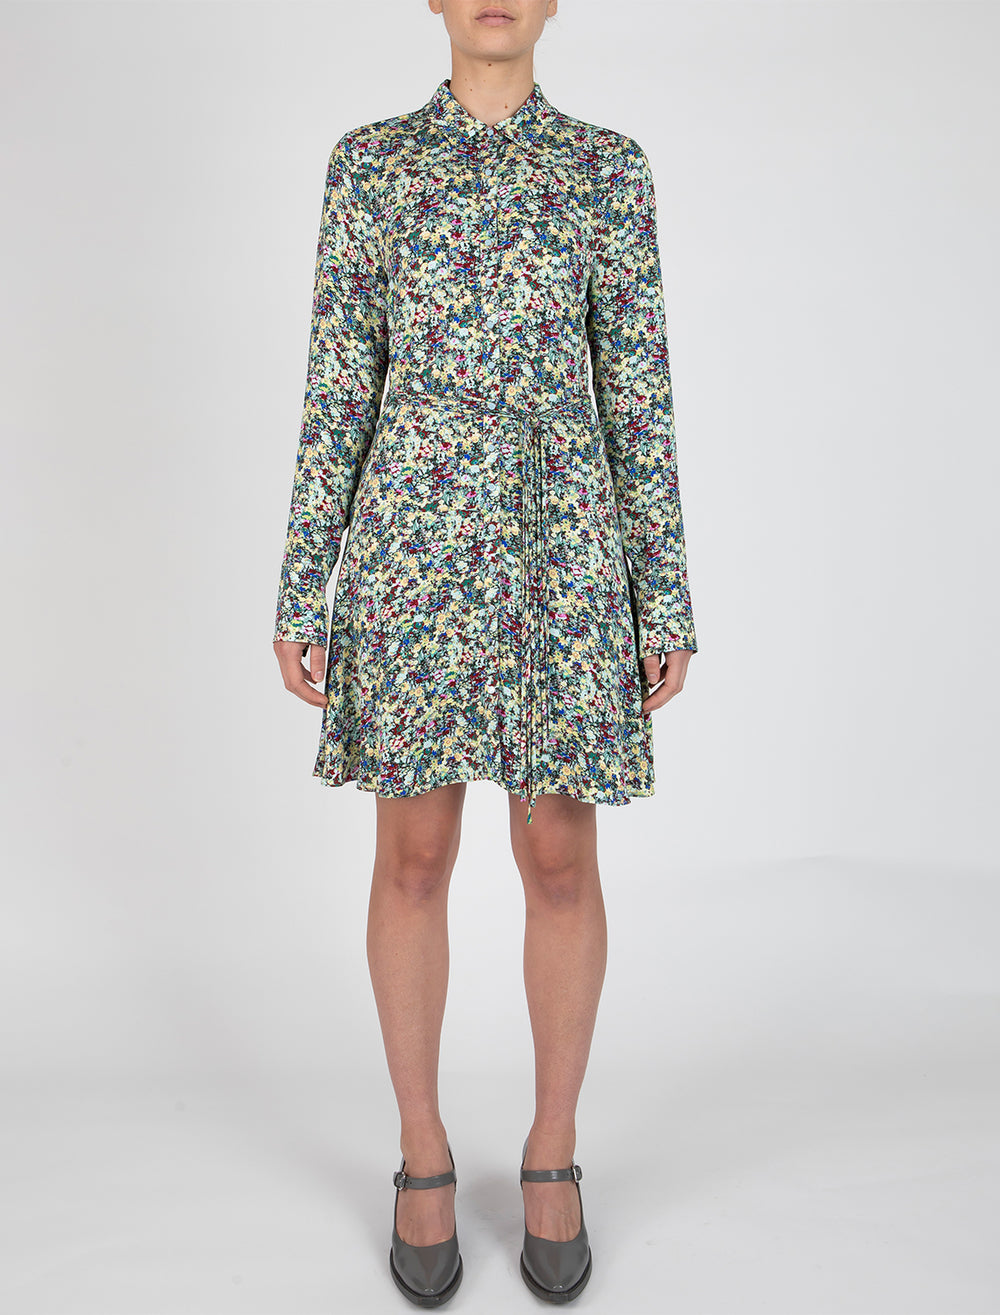 Model wearing Derek Lam 10 Crosby's angie long sleeve shirt dress in teal multi floral.